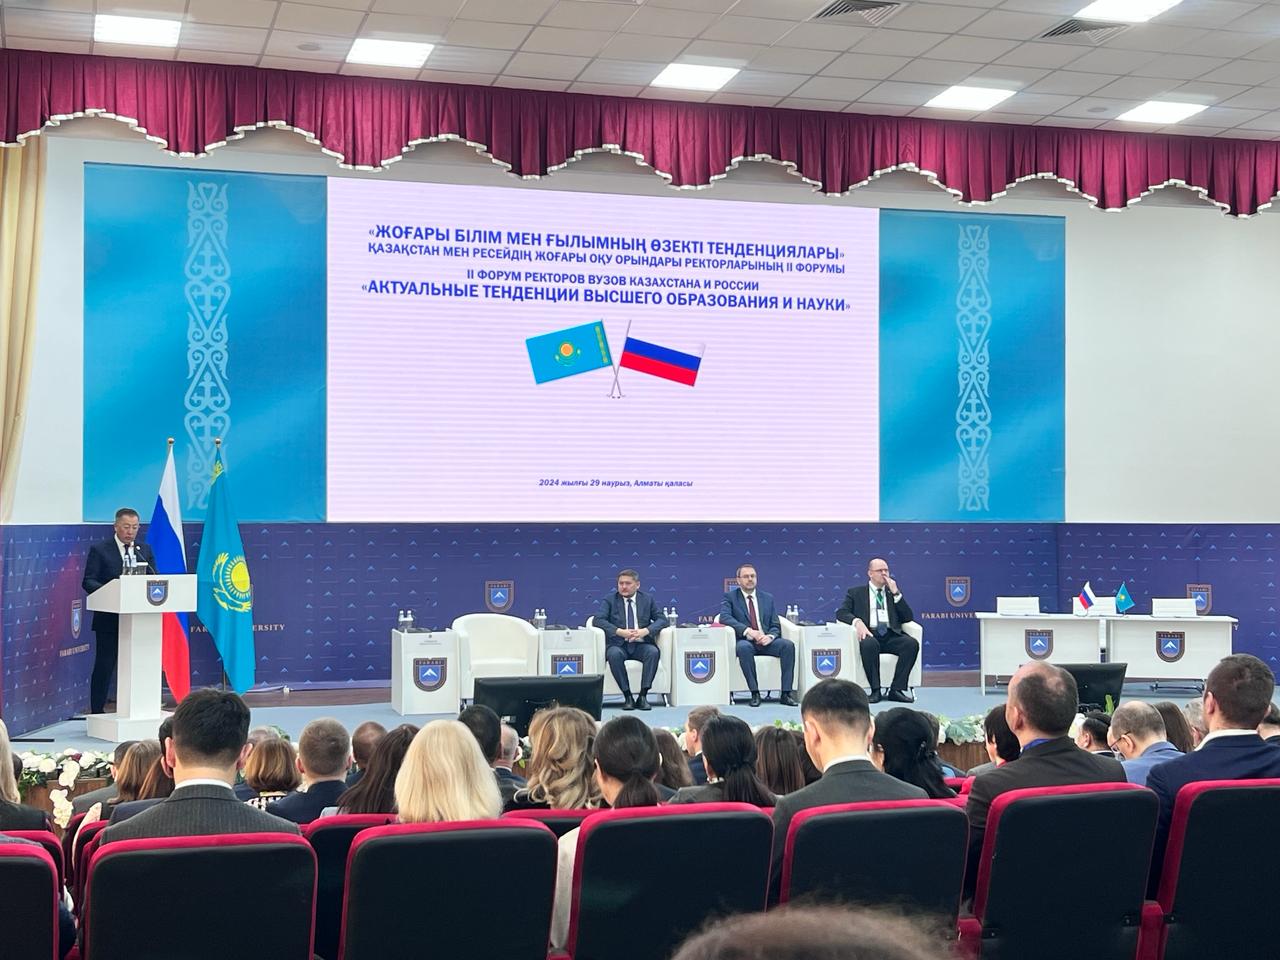 В Казахском национальном университете имени Аль-Фараби прошел II форум ректоров вузов Казахстана и России.